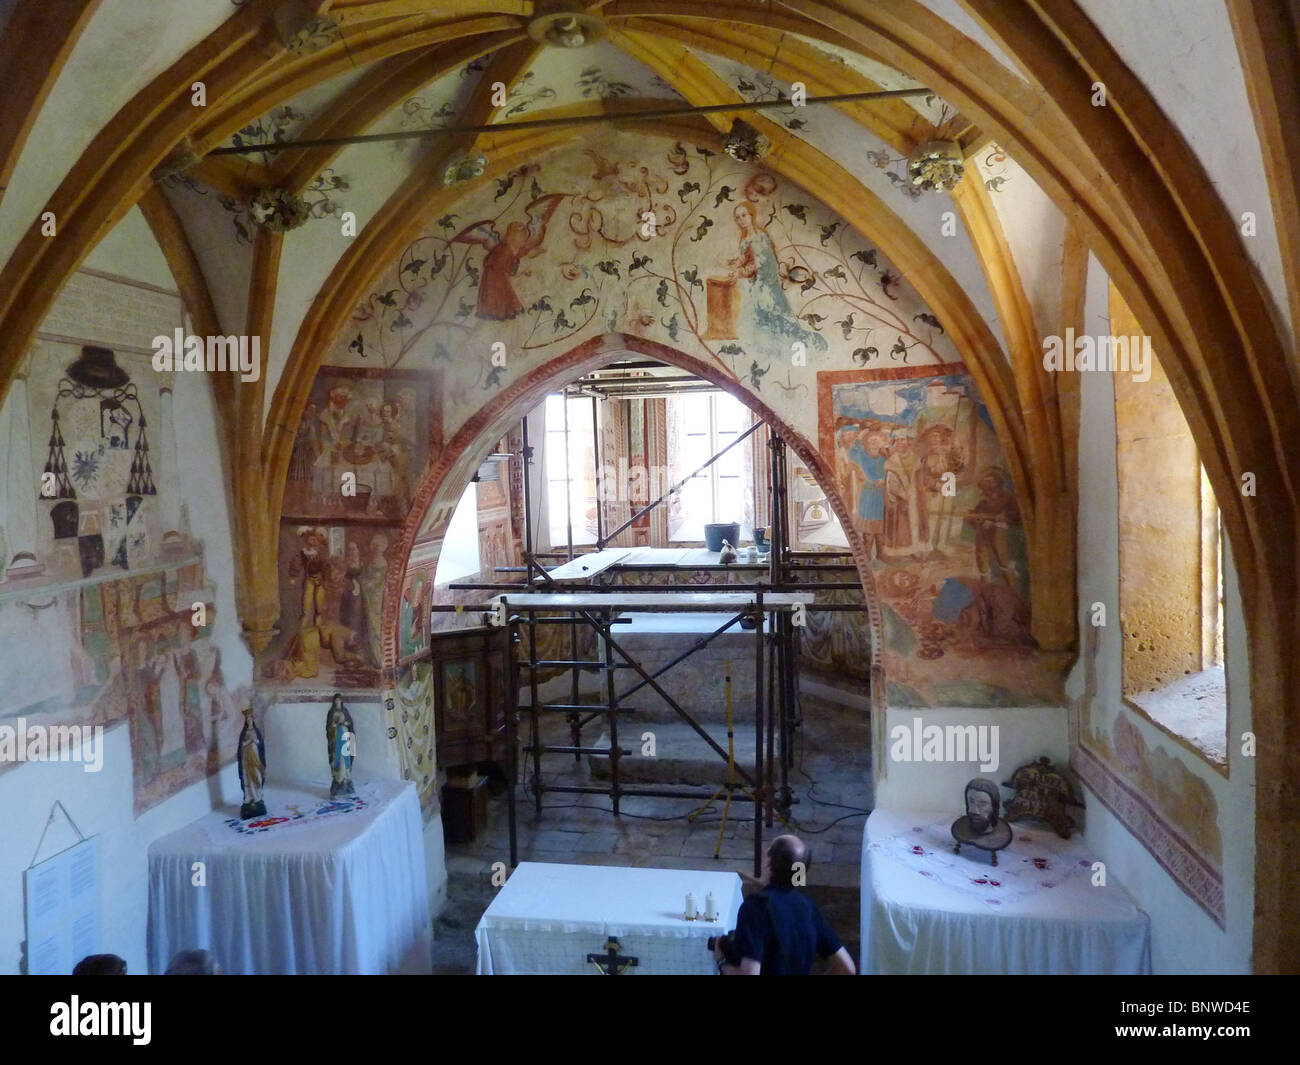 Slowenien - Bohinj. Mittelalterliche Wandmalereien in der Kirche des Hl. Johannes des Täufers wiederhergestellt wird. Foto Tony Gale Stockfoto